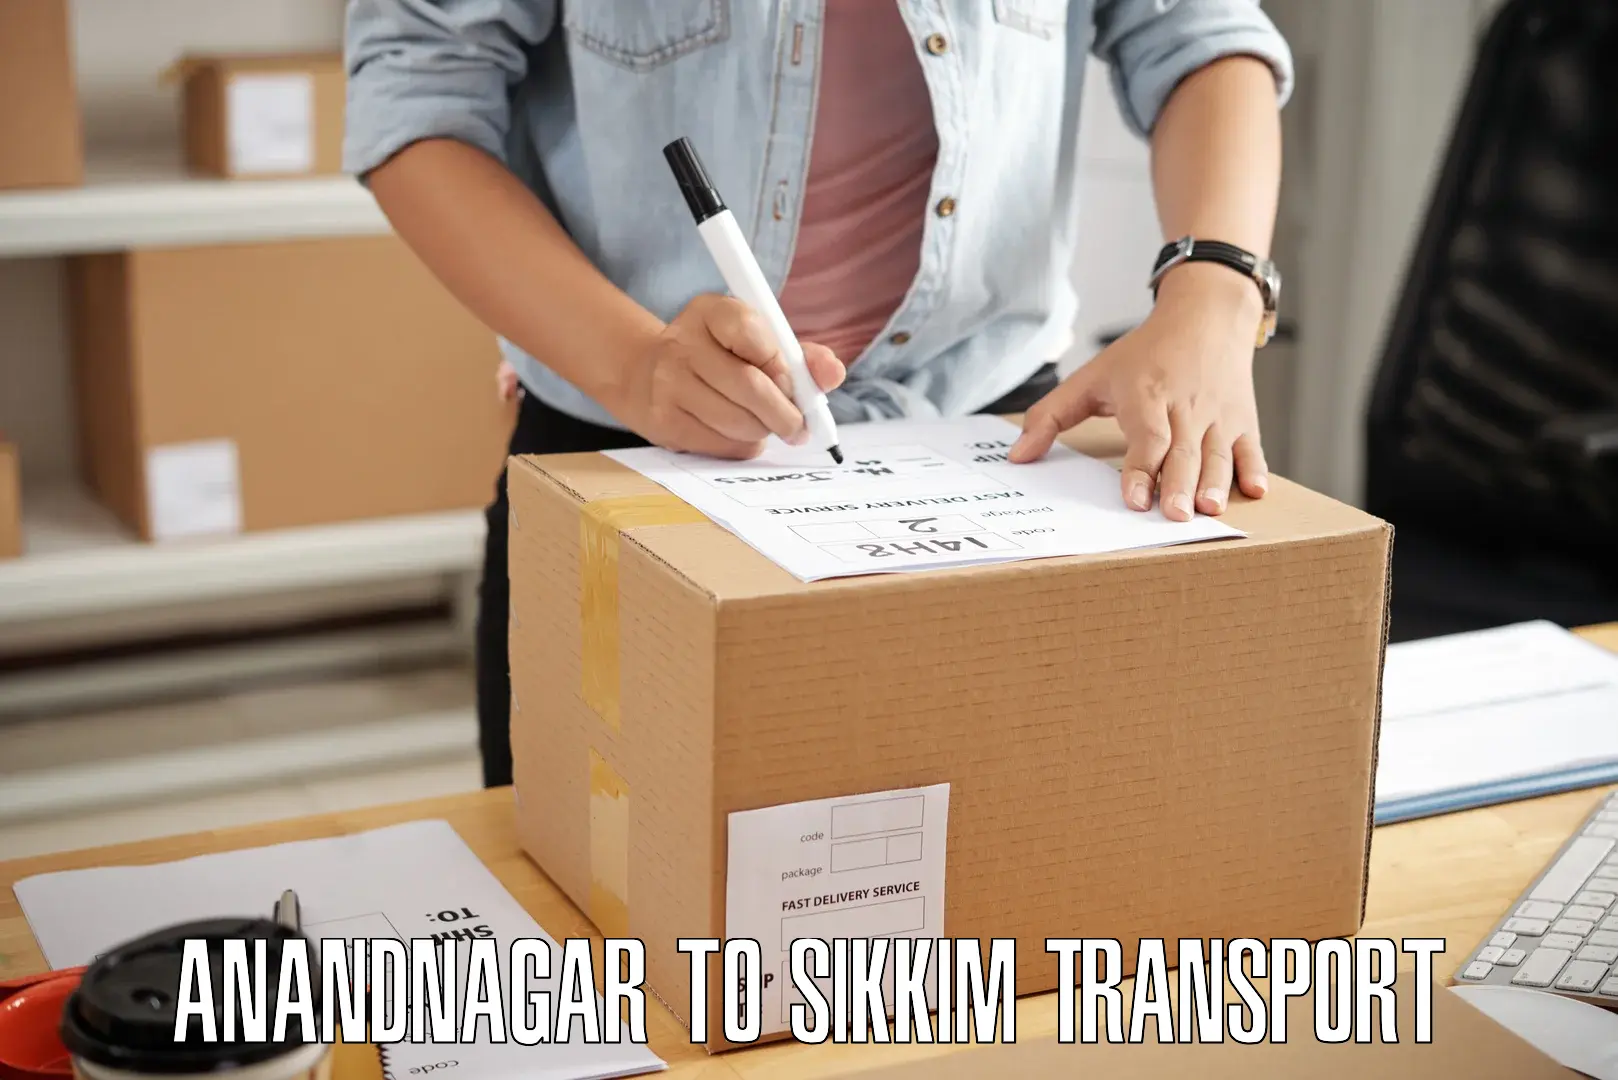 Furniture transport service Anandnagar to Sikkim